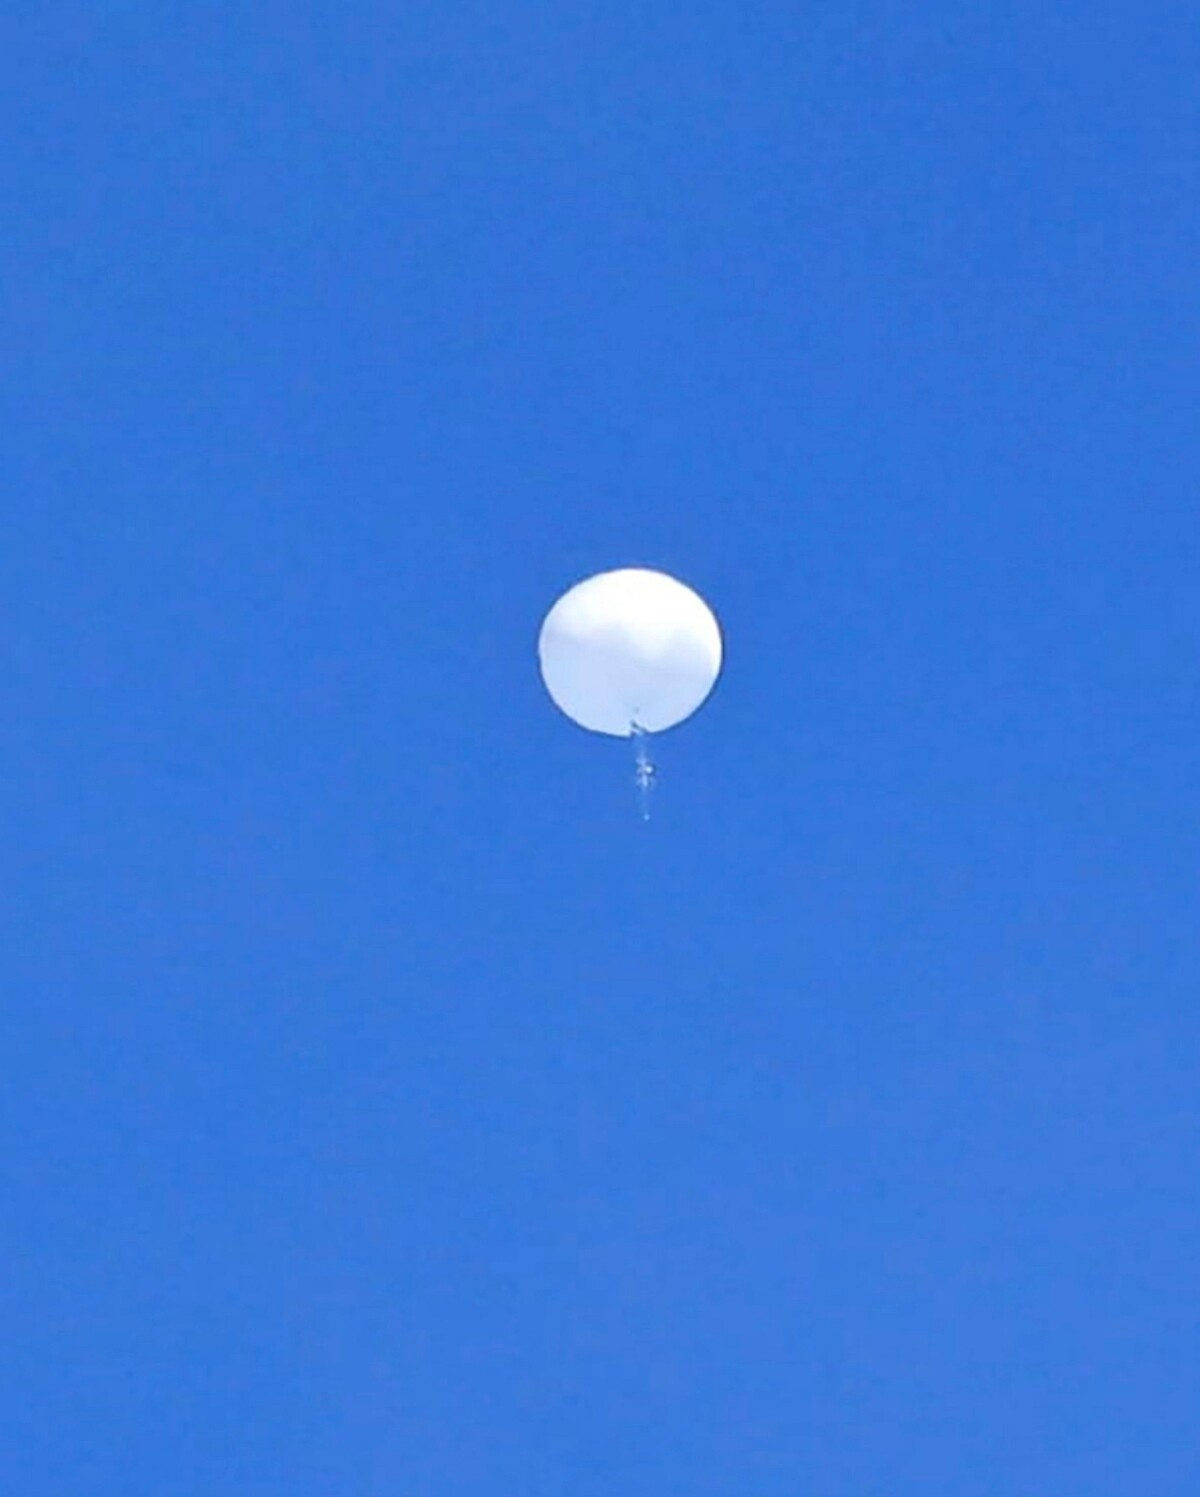 čínsky špionážny balón zostrelený stíhačkou USA